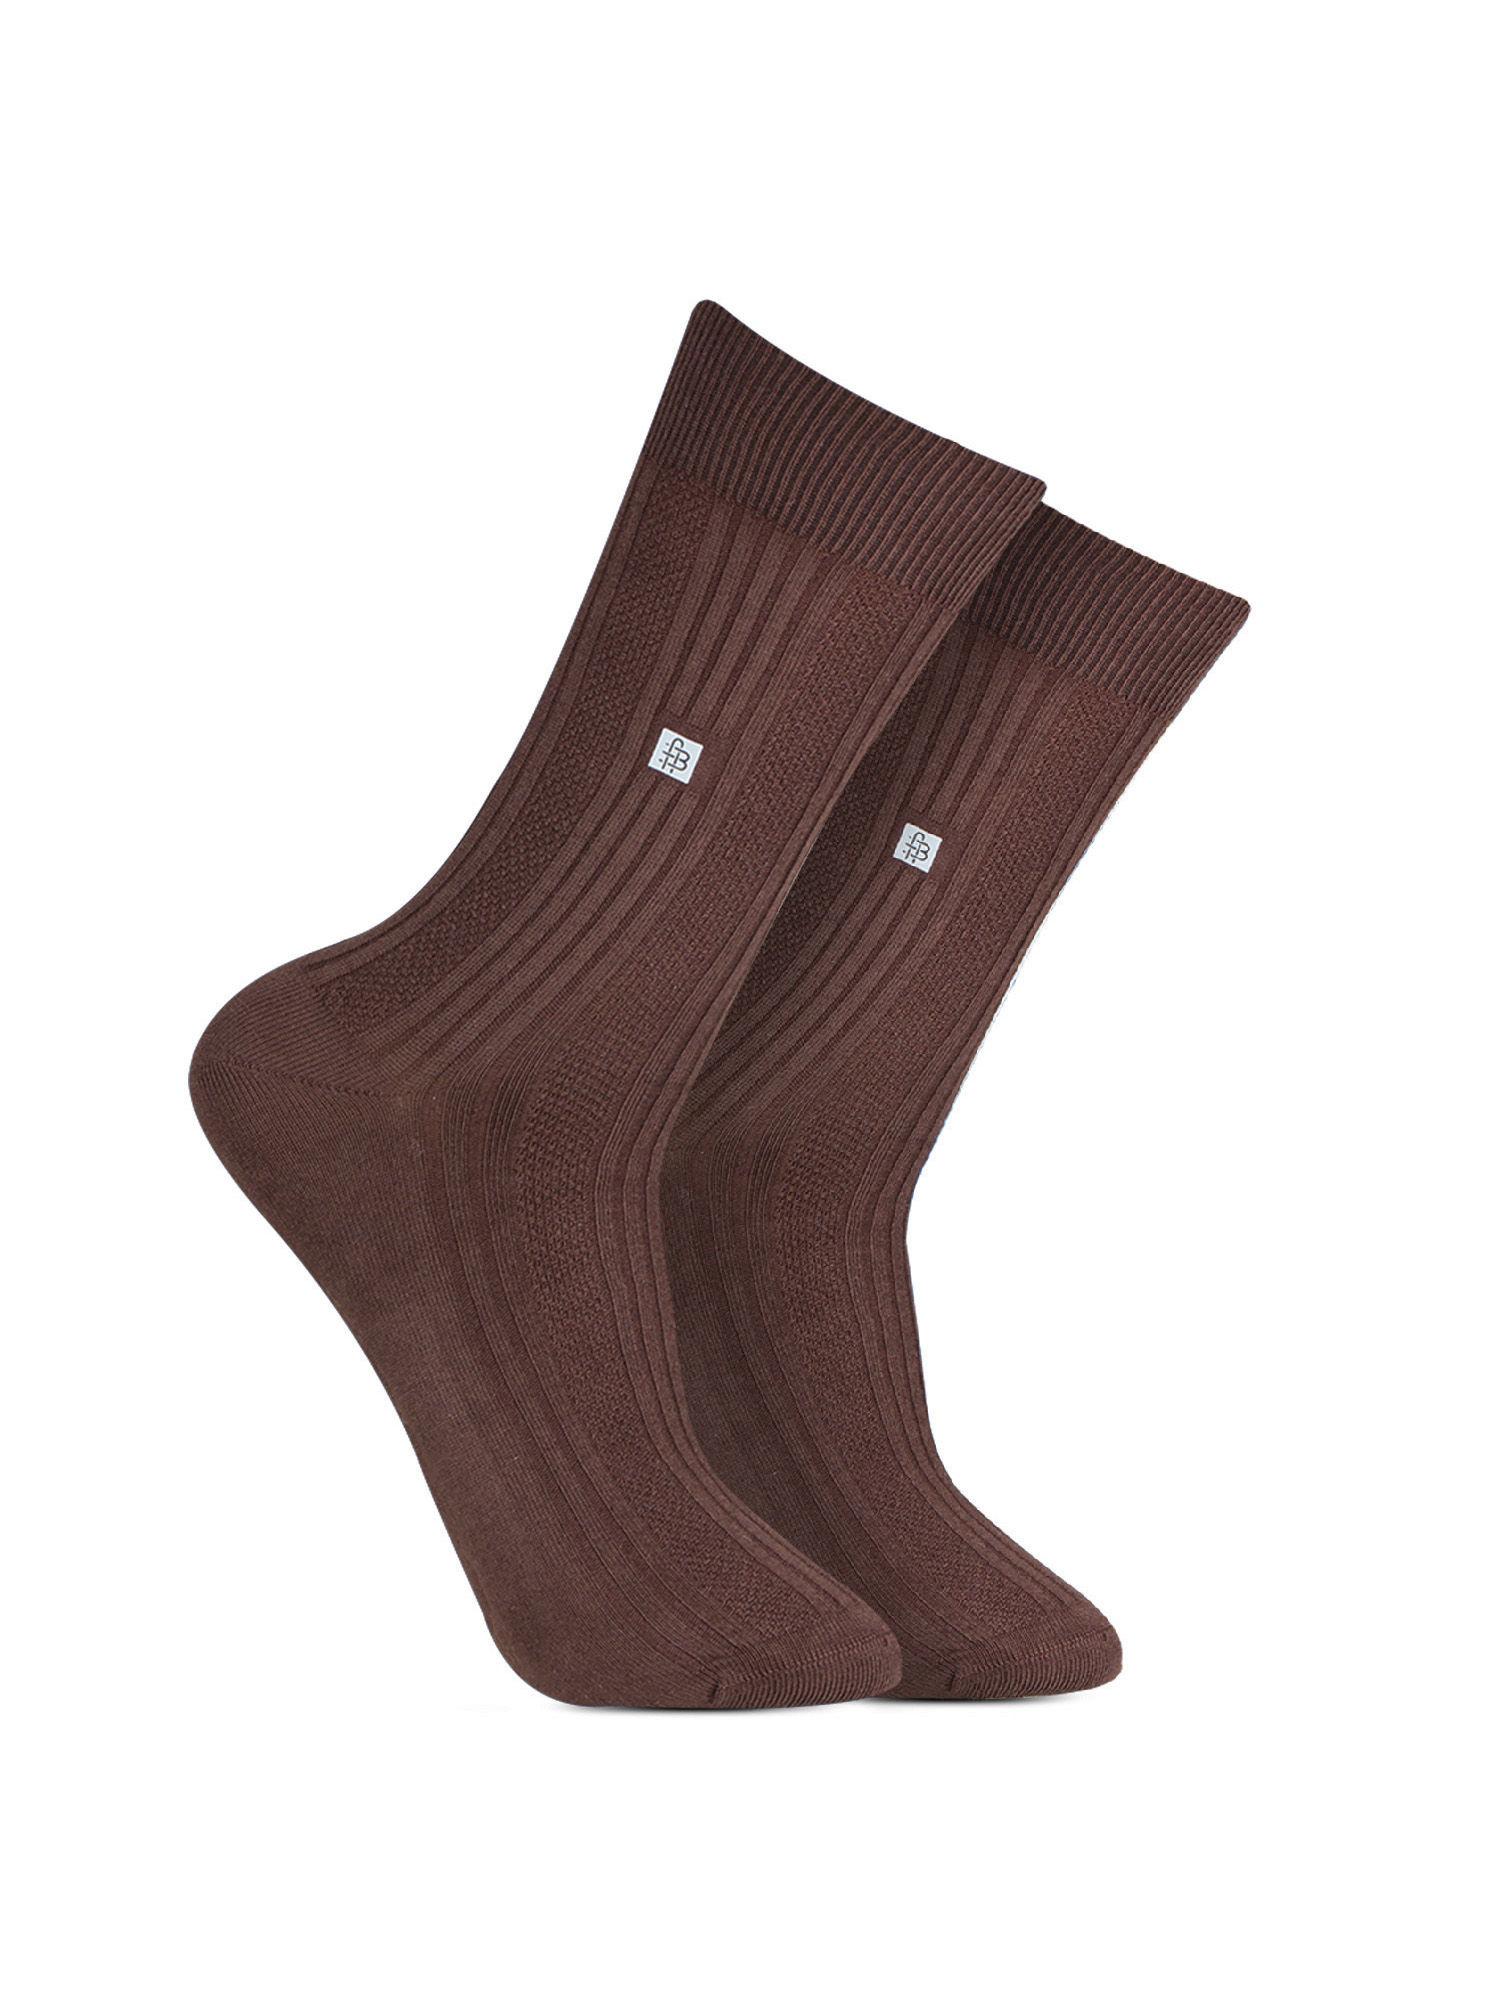 cosmic ribbed formal socks - brown